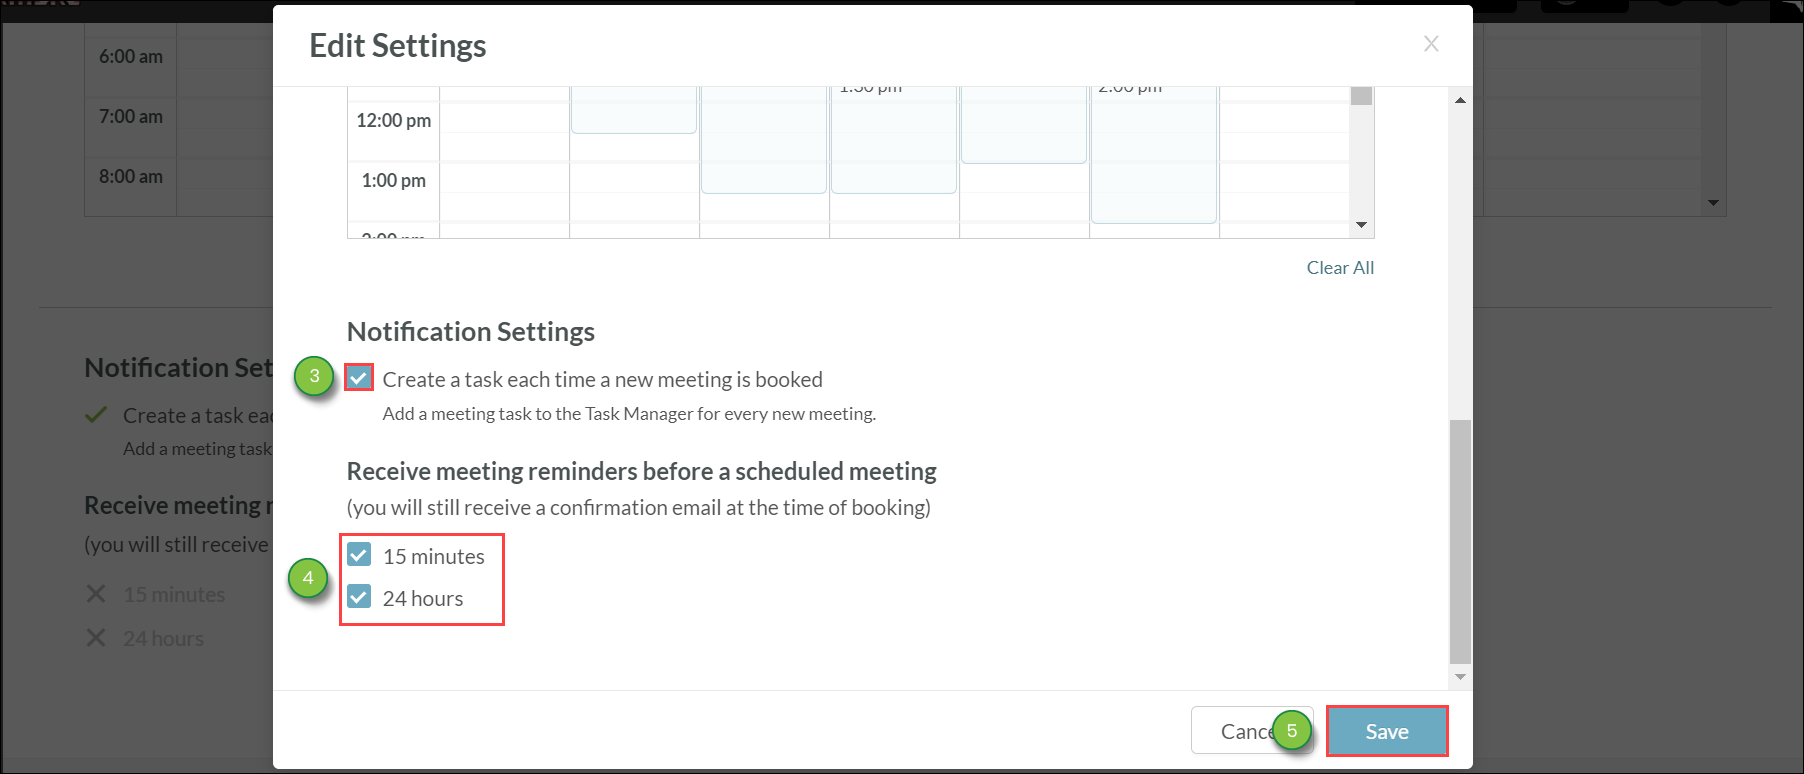 Editing Settings for Meetings